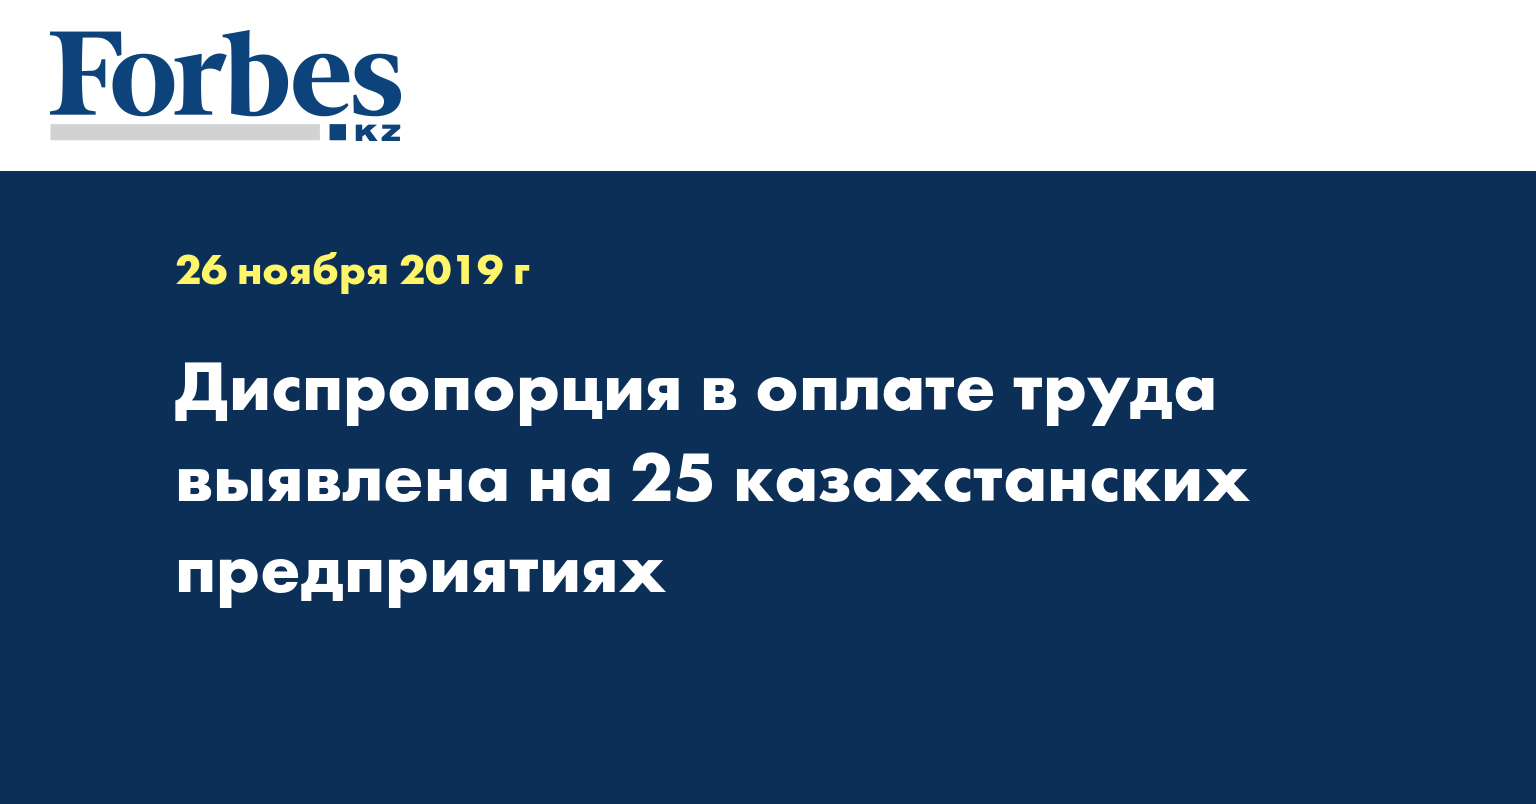 Диспропорция в оплате труда выявлена на 25 казахстанских предприятиях